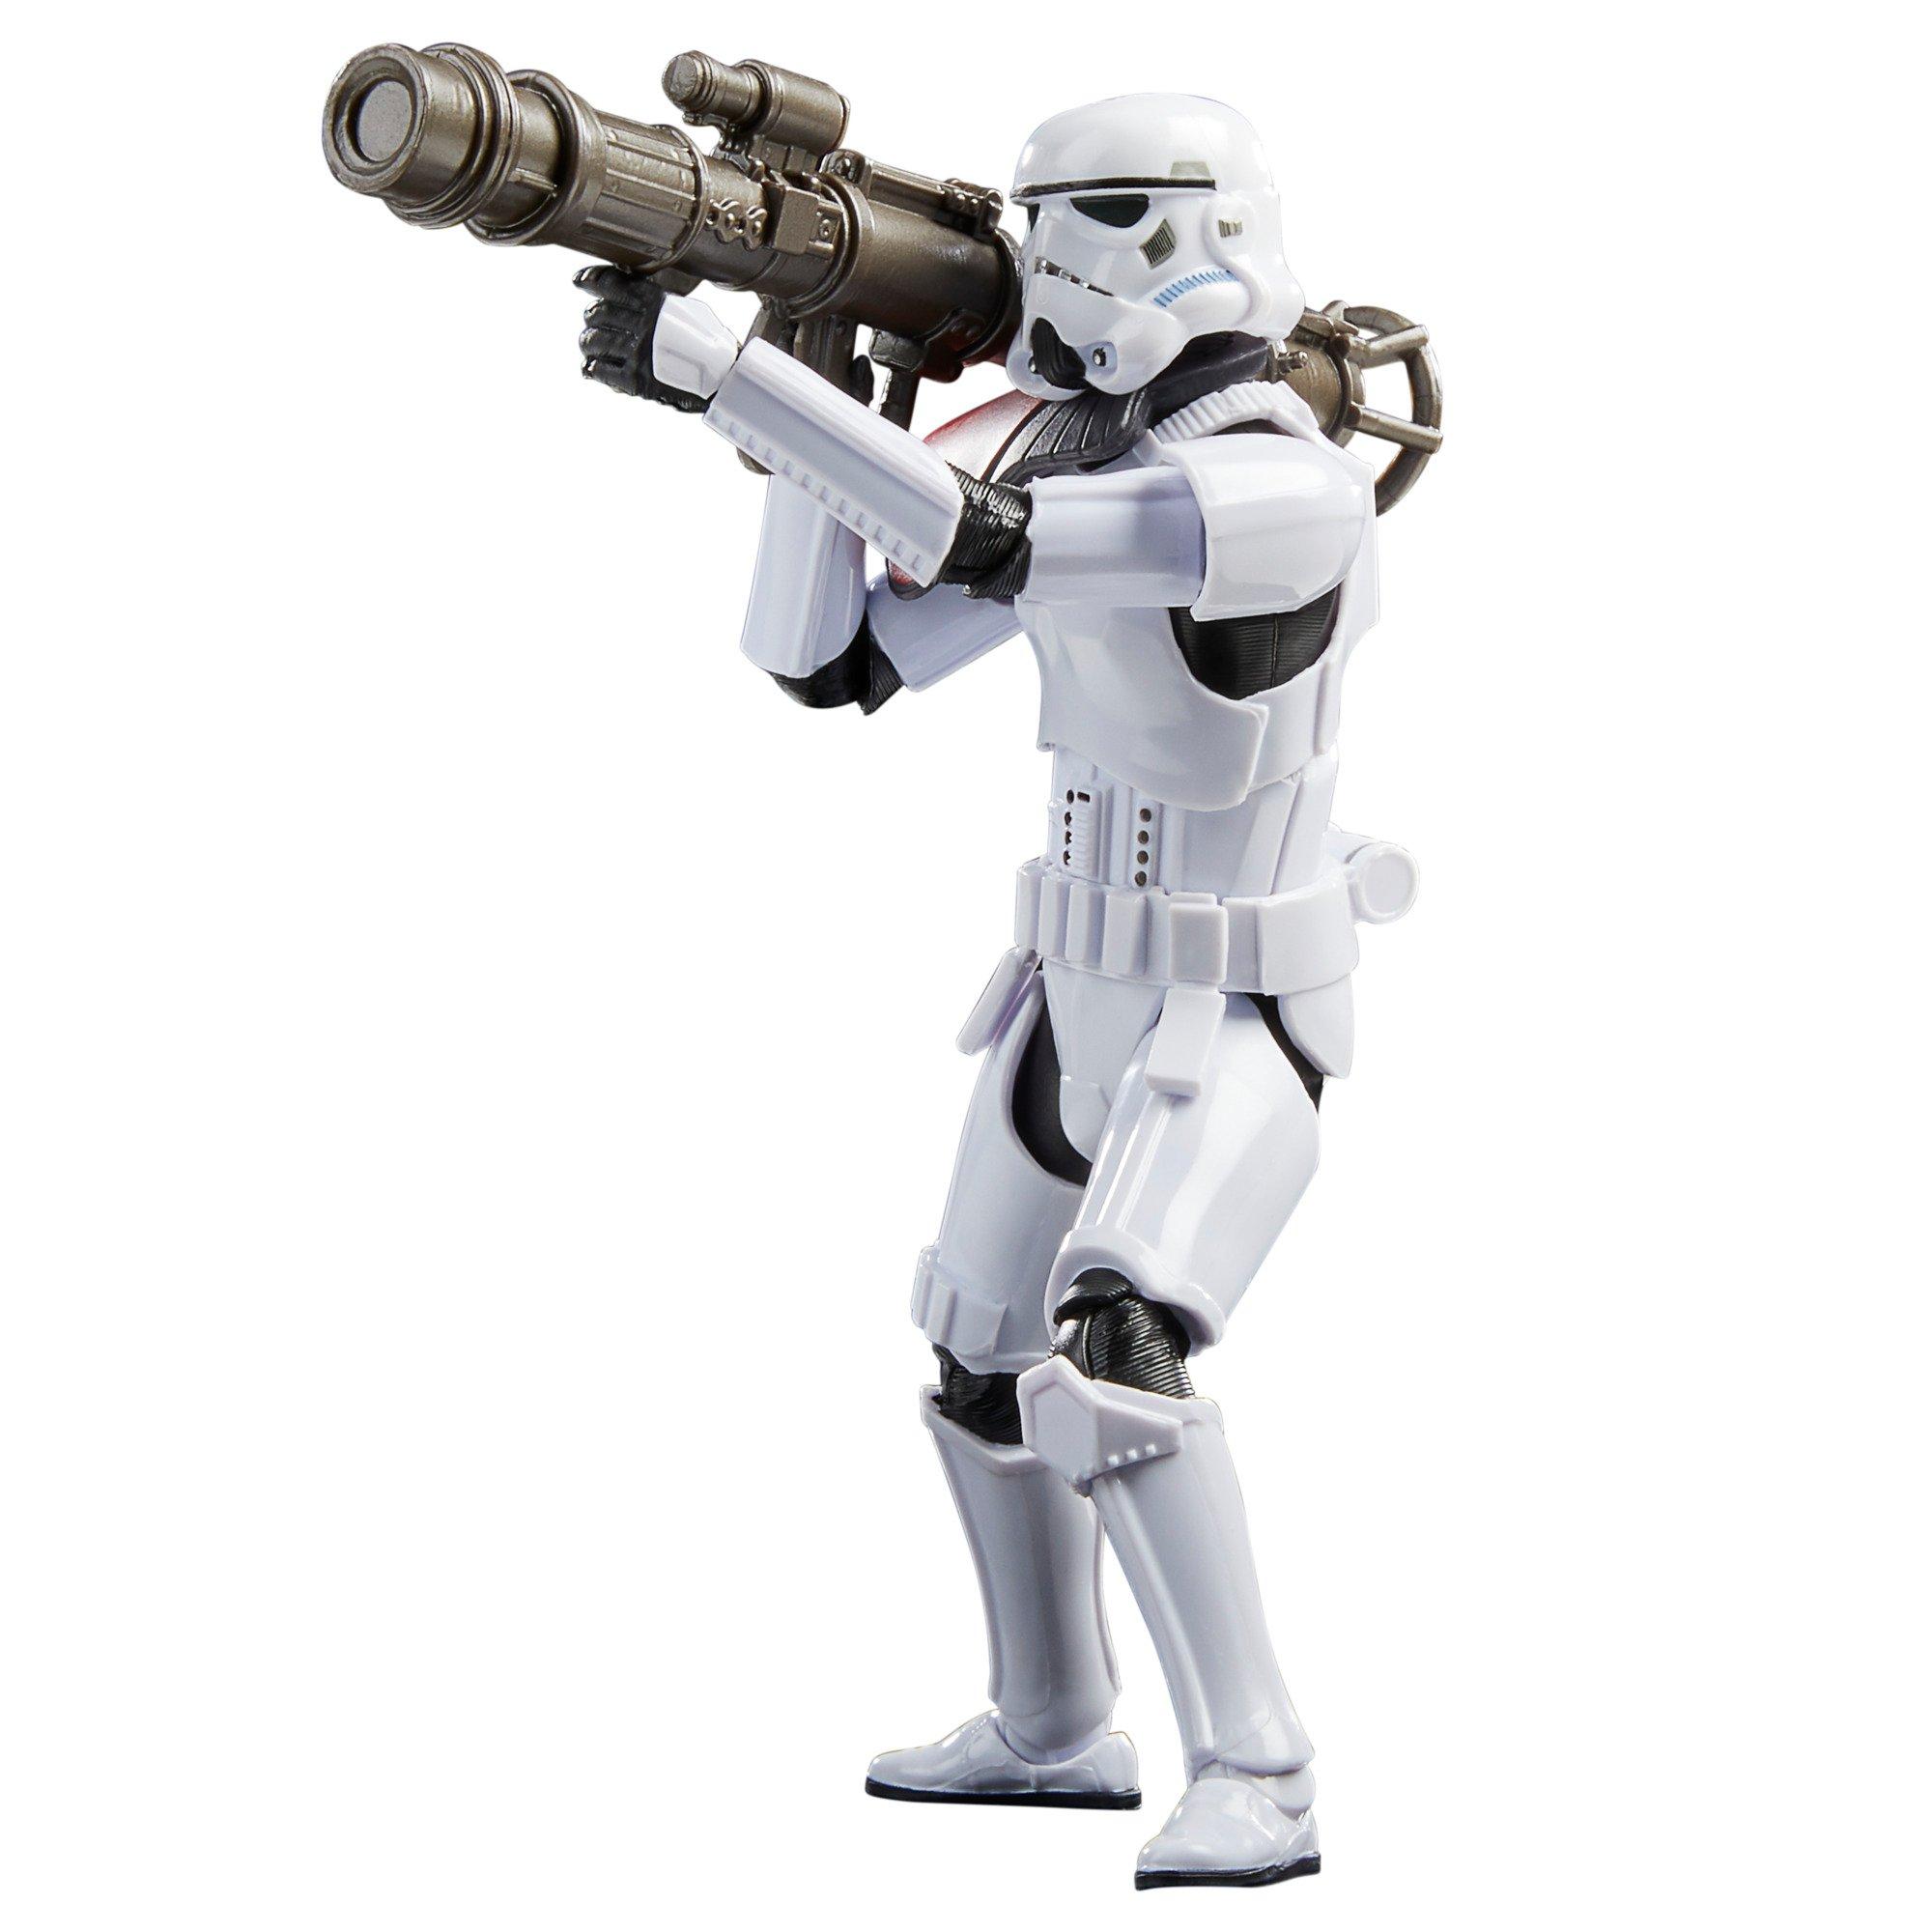 list item 2 of 10 Hasbro Star Wars The Black Series Star Wars Jedi: Fallen Order Rocket Launcher Trooper 6-in Action Figure GameStop Exclusive